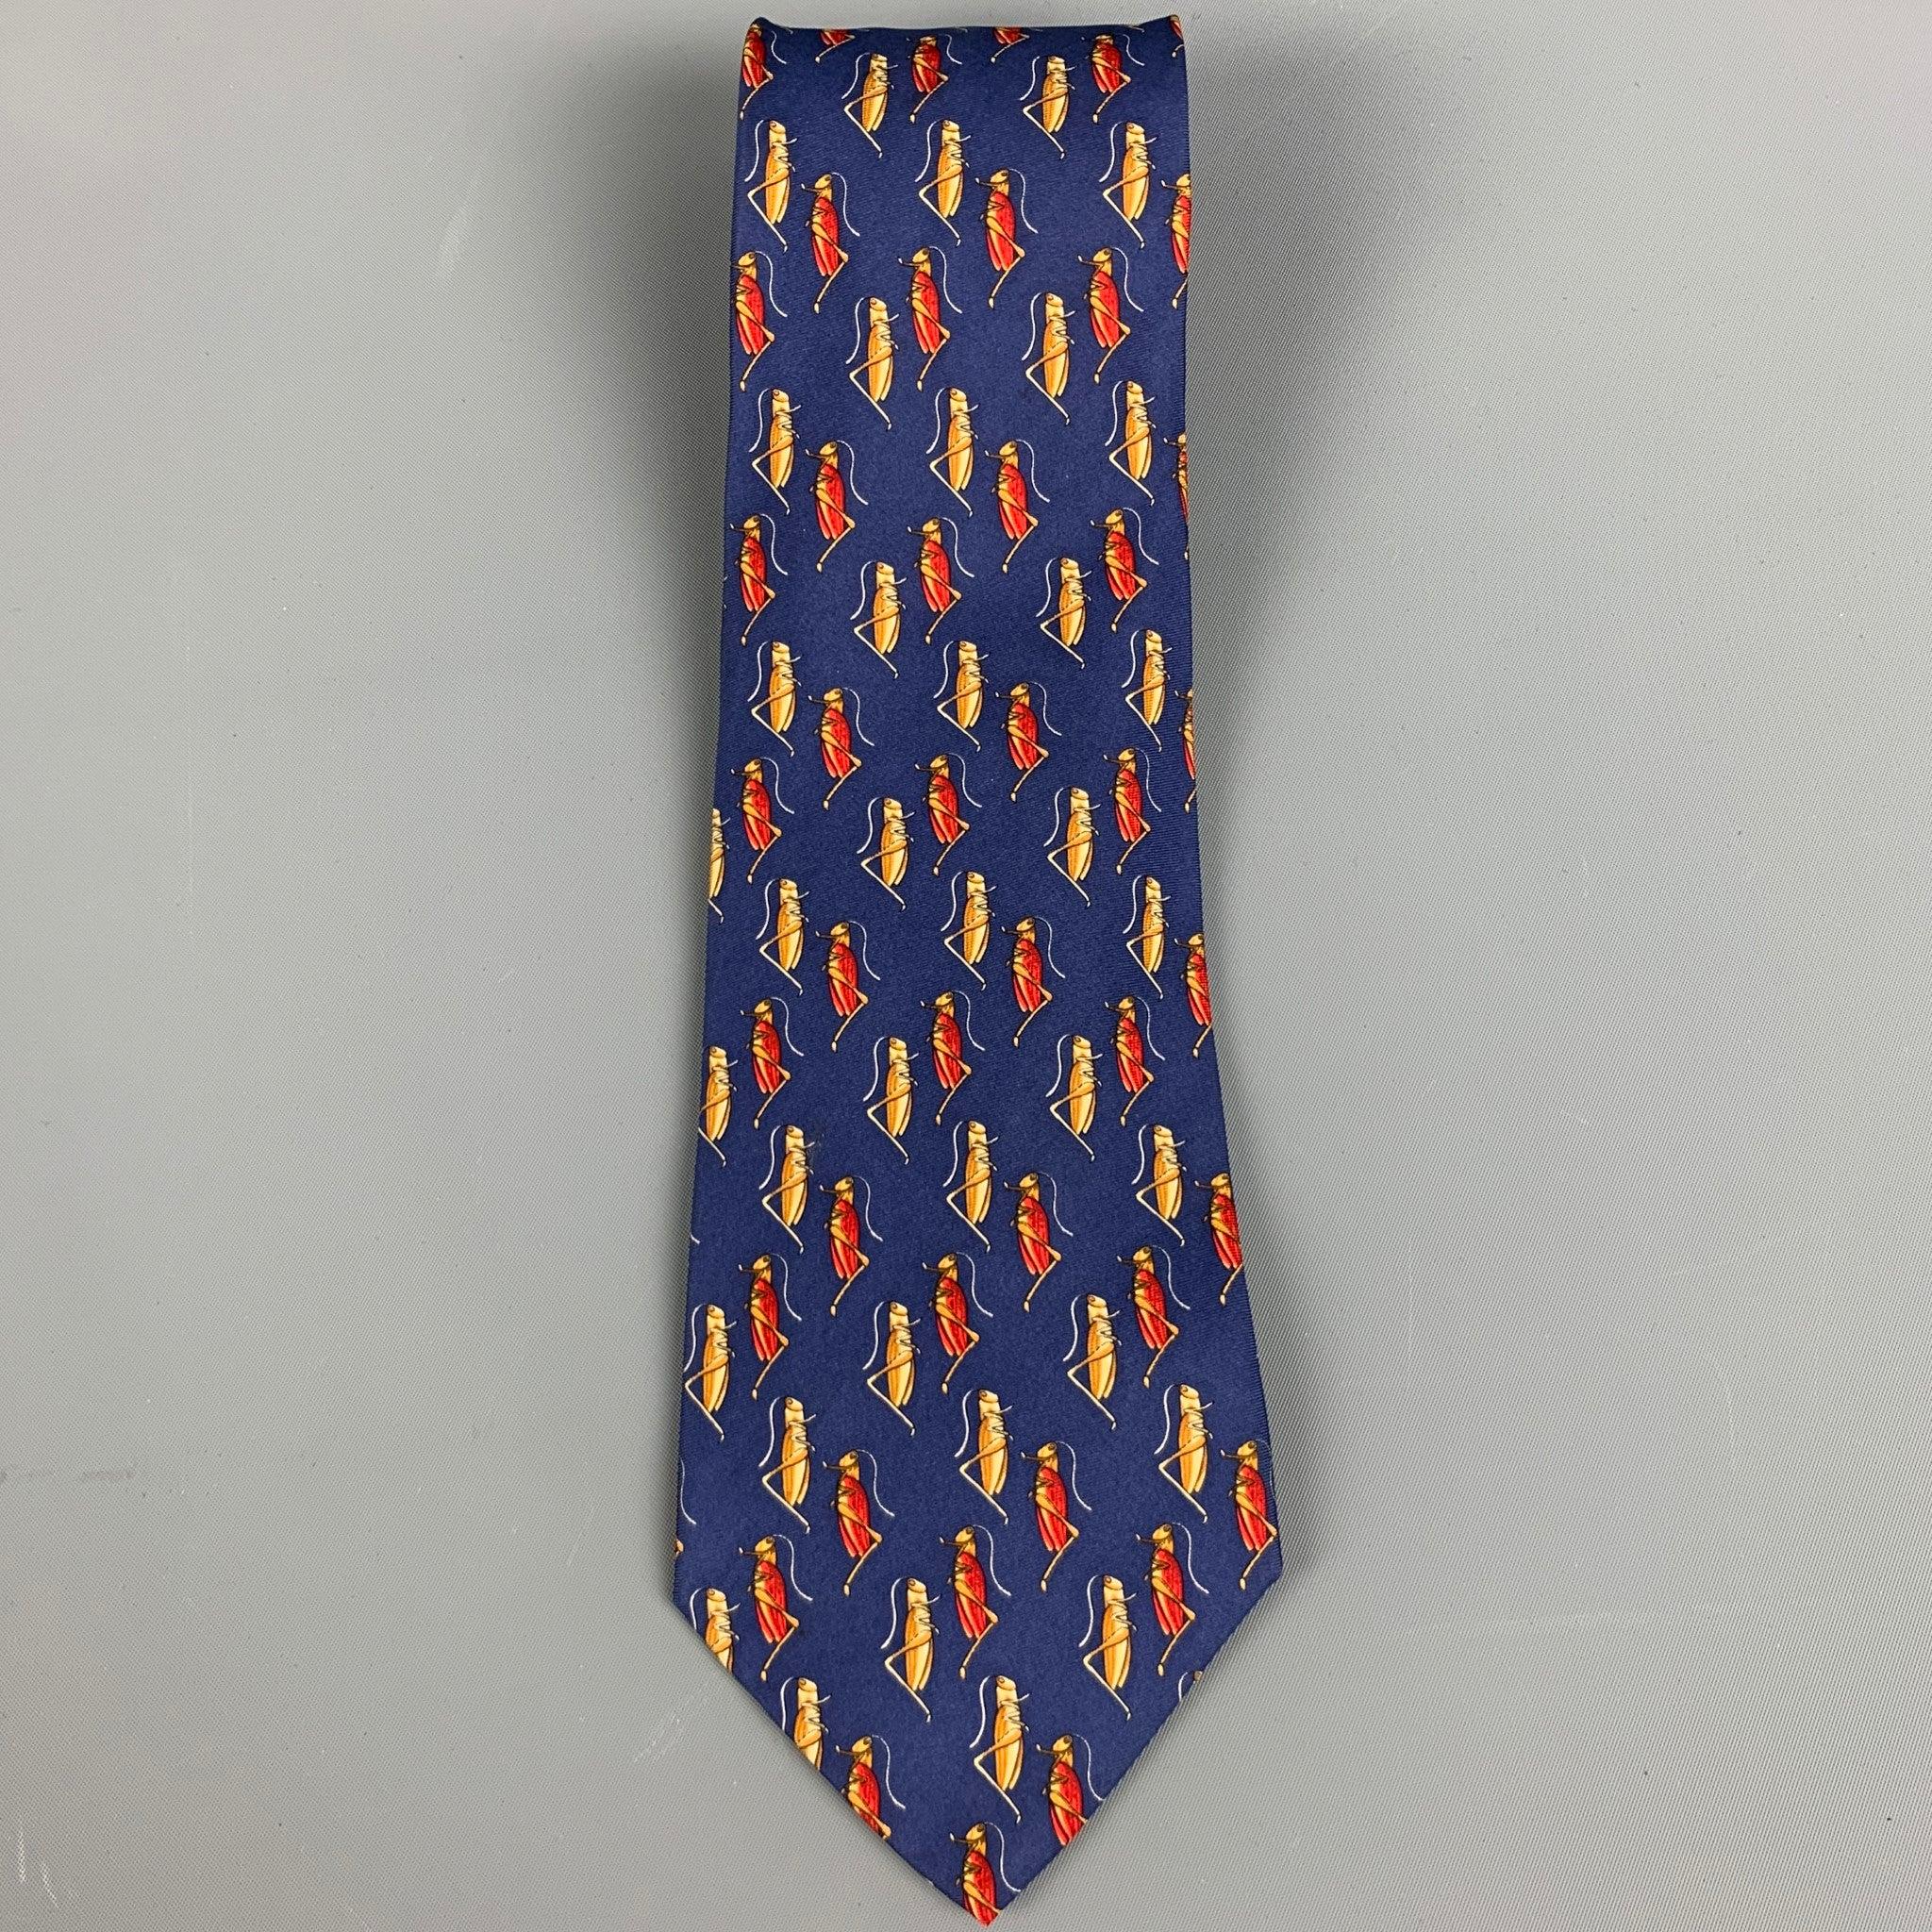 TIFFANY & CO.
Krawatte aus blauem Seidenstoff mit rotem und gelbem Grashüpfer-Muster. Made in Italy Ausgezeichneter Pre-Owned Zustand. 

Abmessungen: 
  Breite: 3,5 Zoll Länge: 58 Zoll 
  
  
 
Referenz: 128077
Kategorie: Krawatte
Mehr Details
   